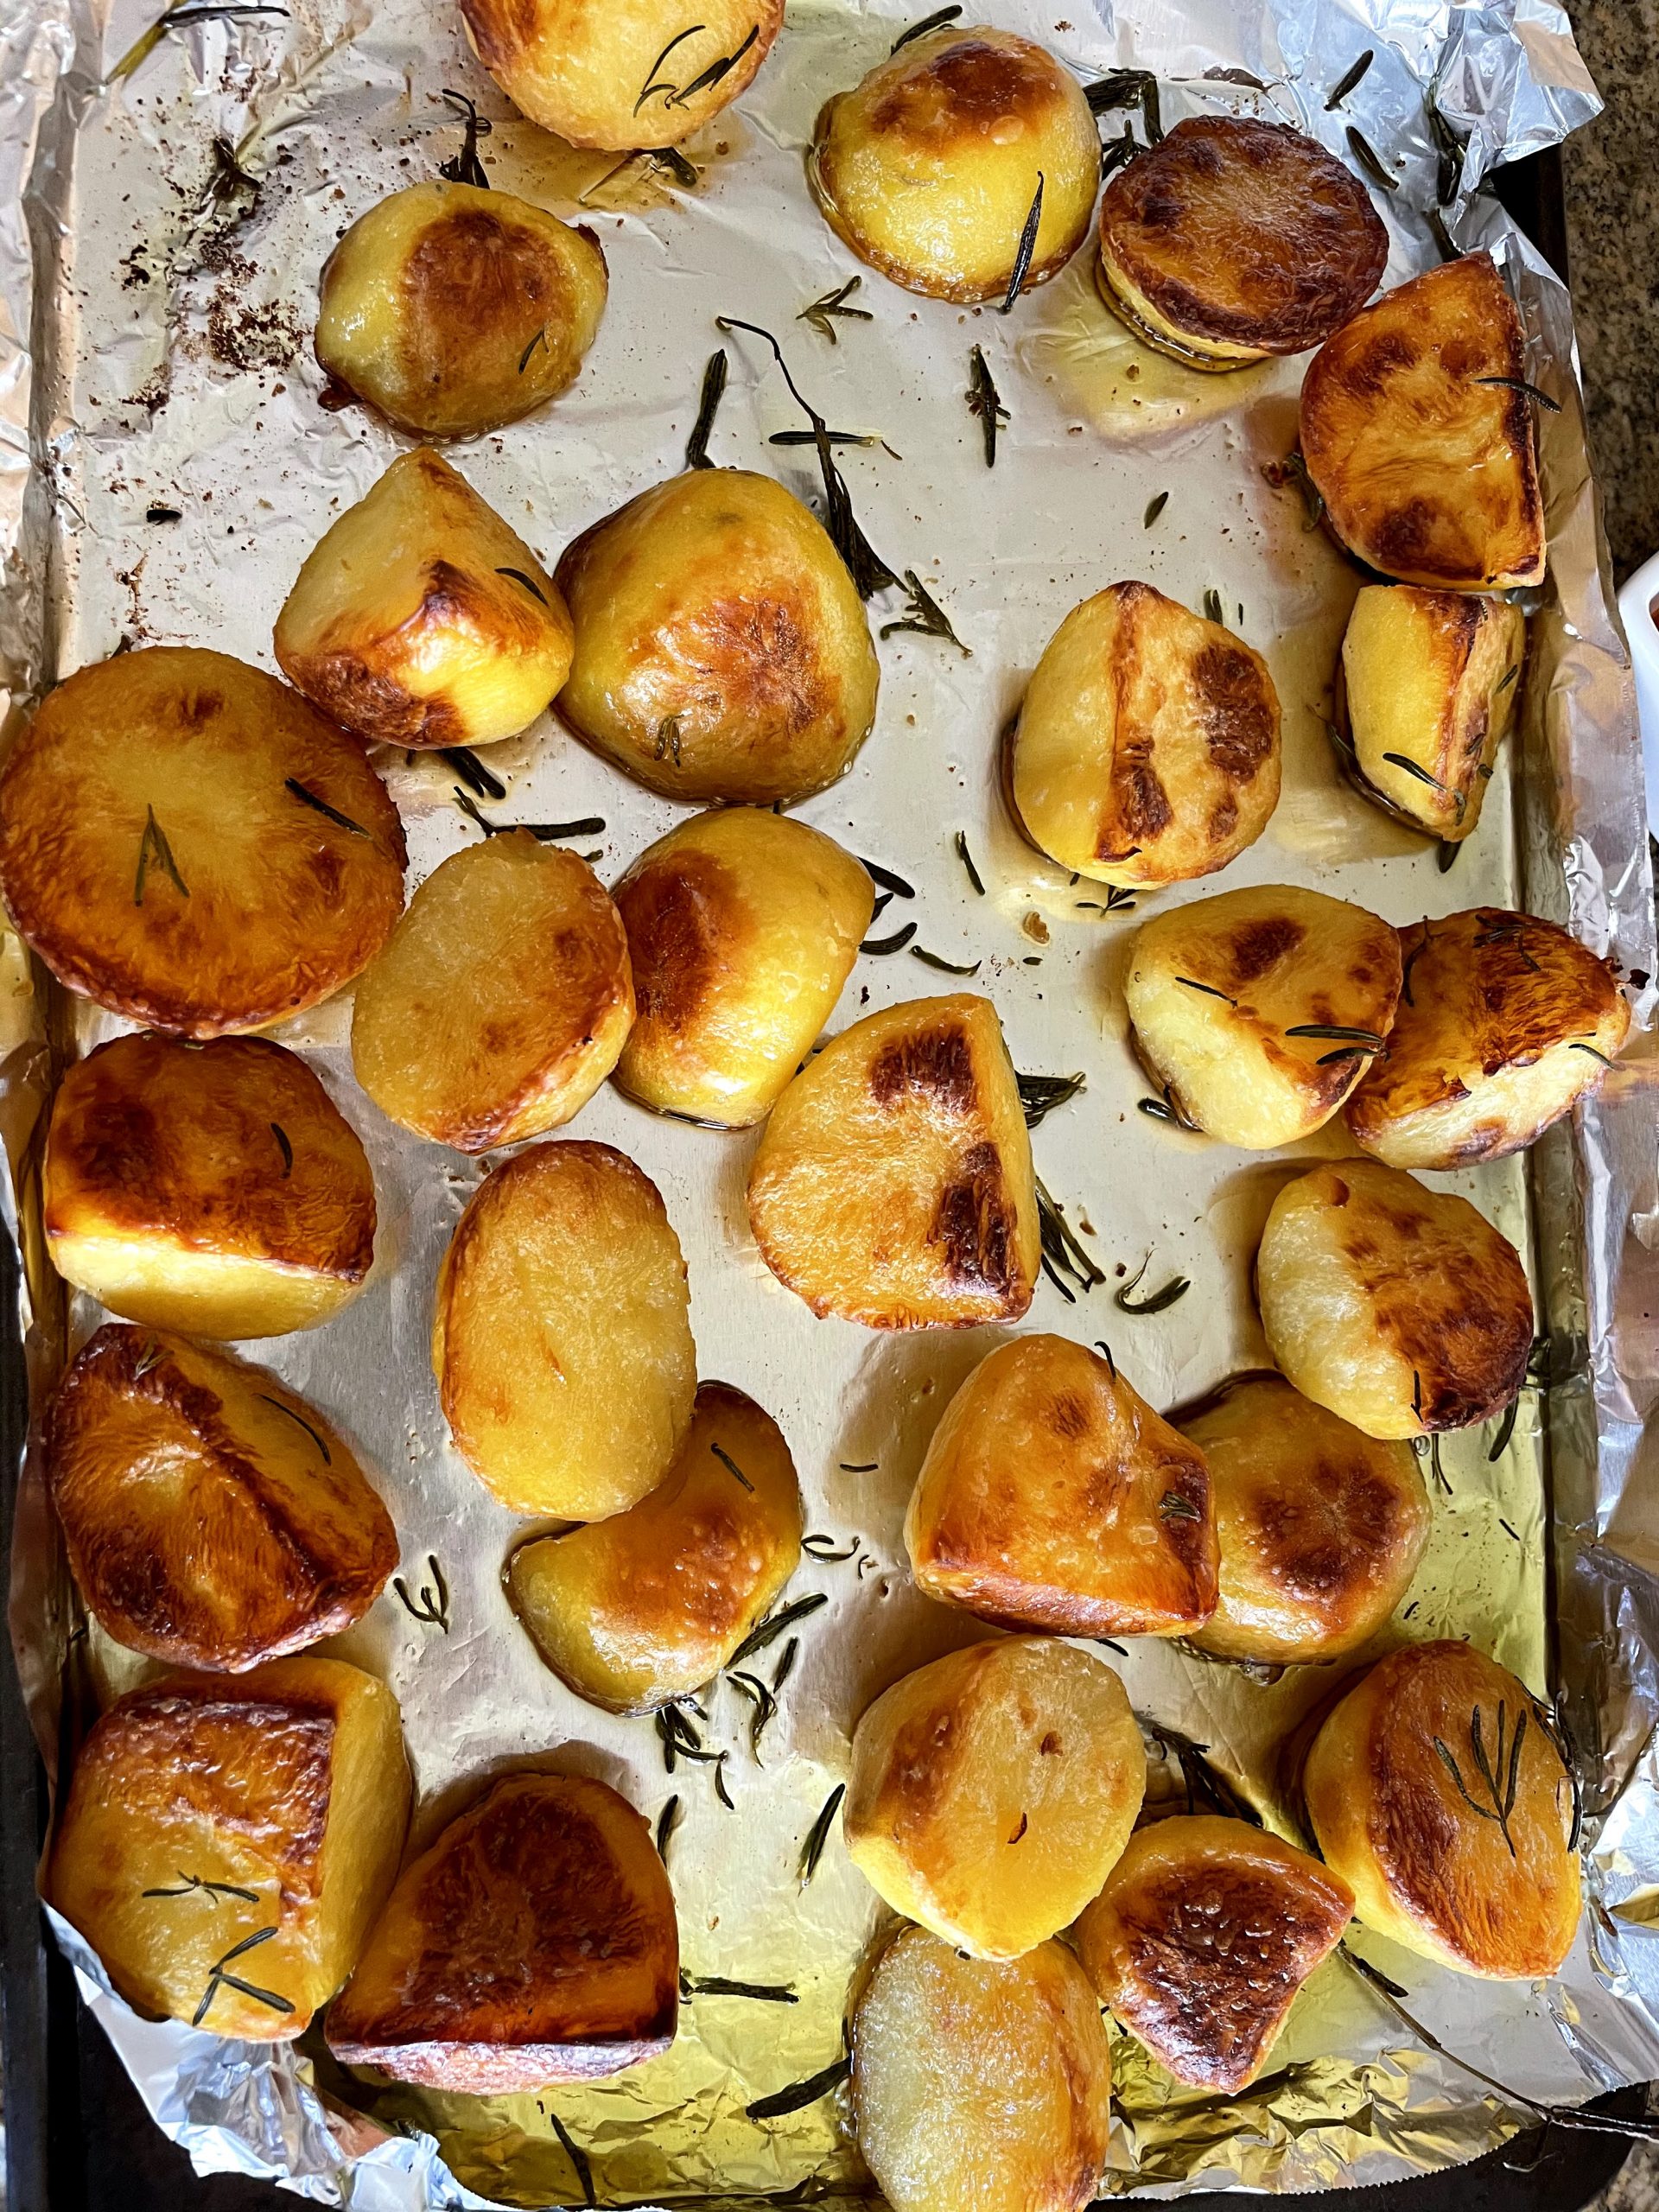 Golden brown roast potatoes